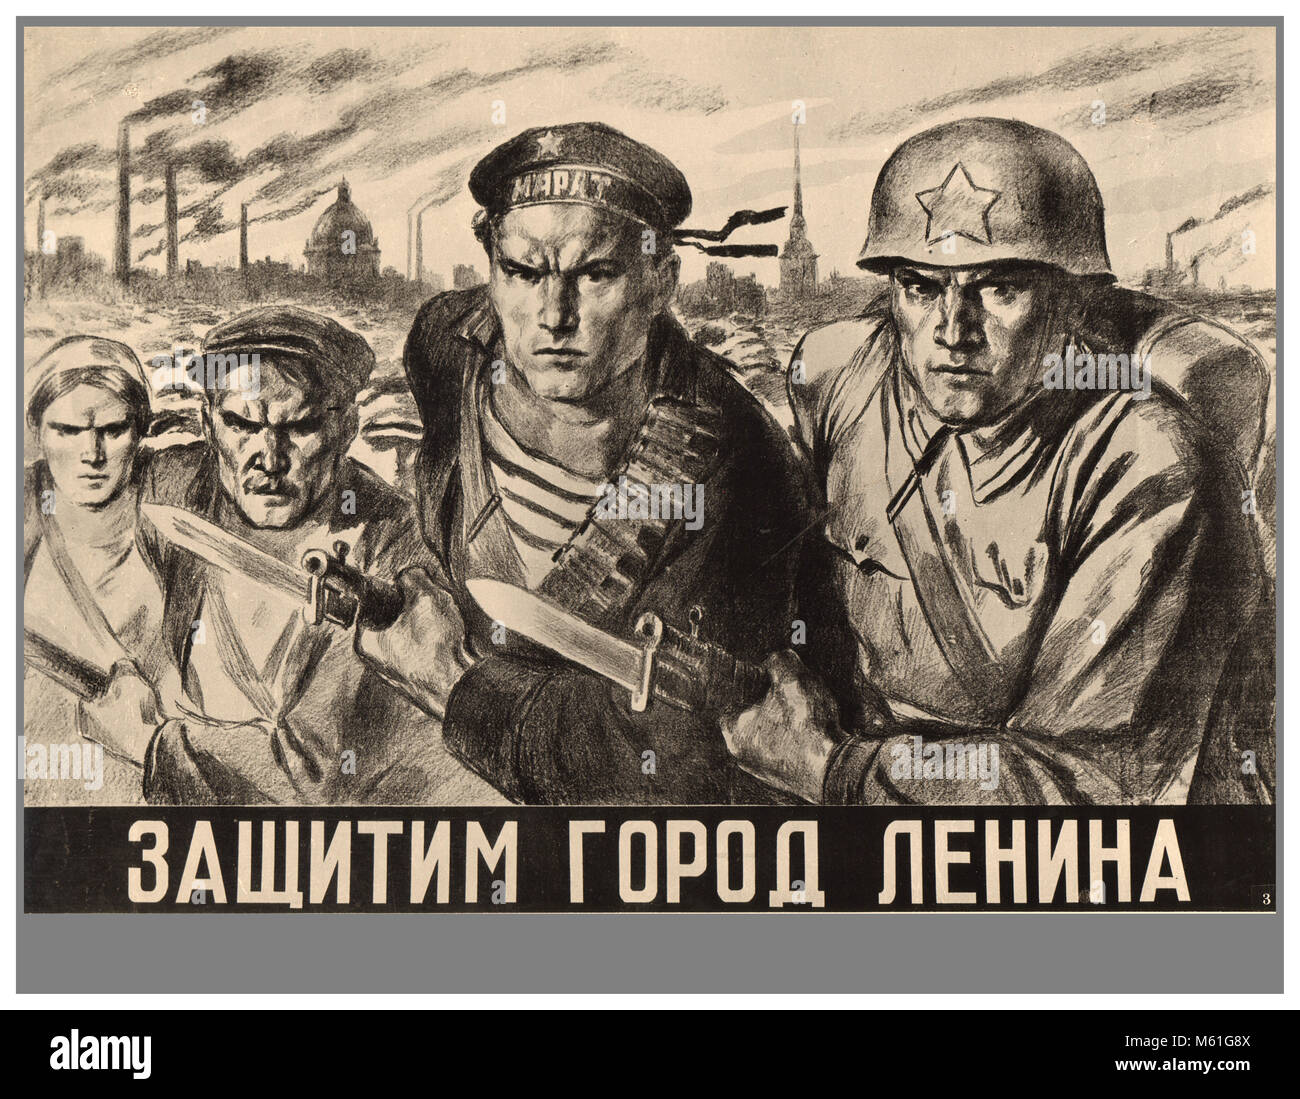 Vintage WW2 die sowjetische Propaganda Poster "Wir werden die Stadt von Lenin zu verteidigen" (Leningrad) Zur Veranschaulichung der sowjetischen militärischen Neben bestimmt Zivilisten, das für einen verbissenen Kampf gegen NS-Deutschland 1940 Stockfoto